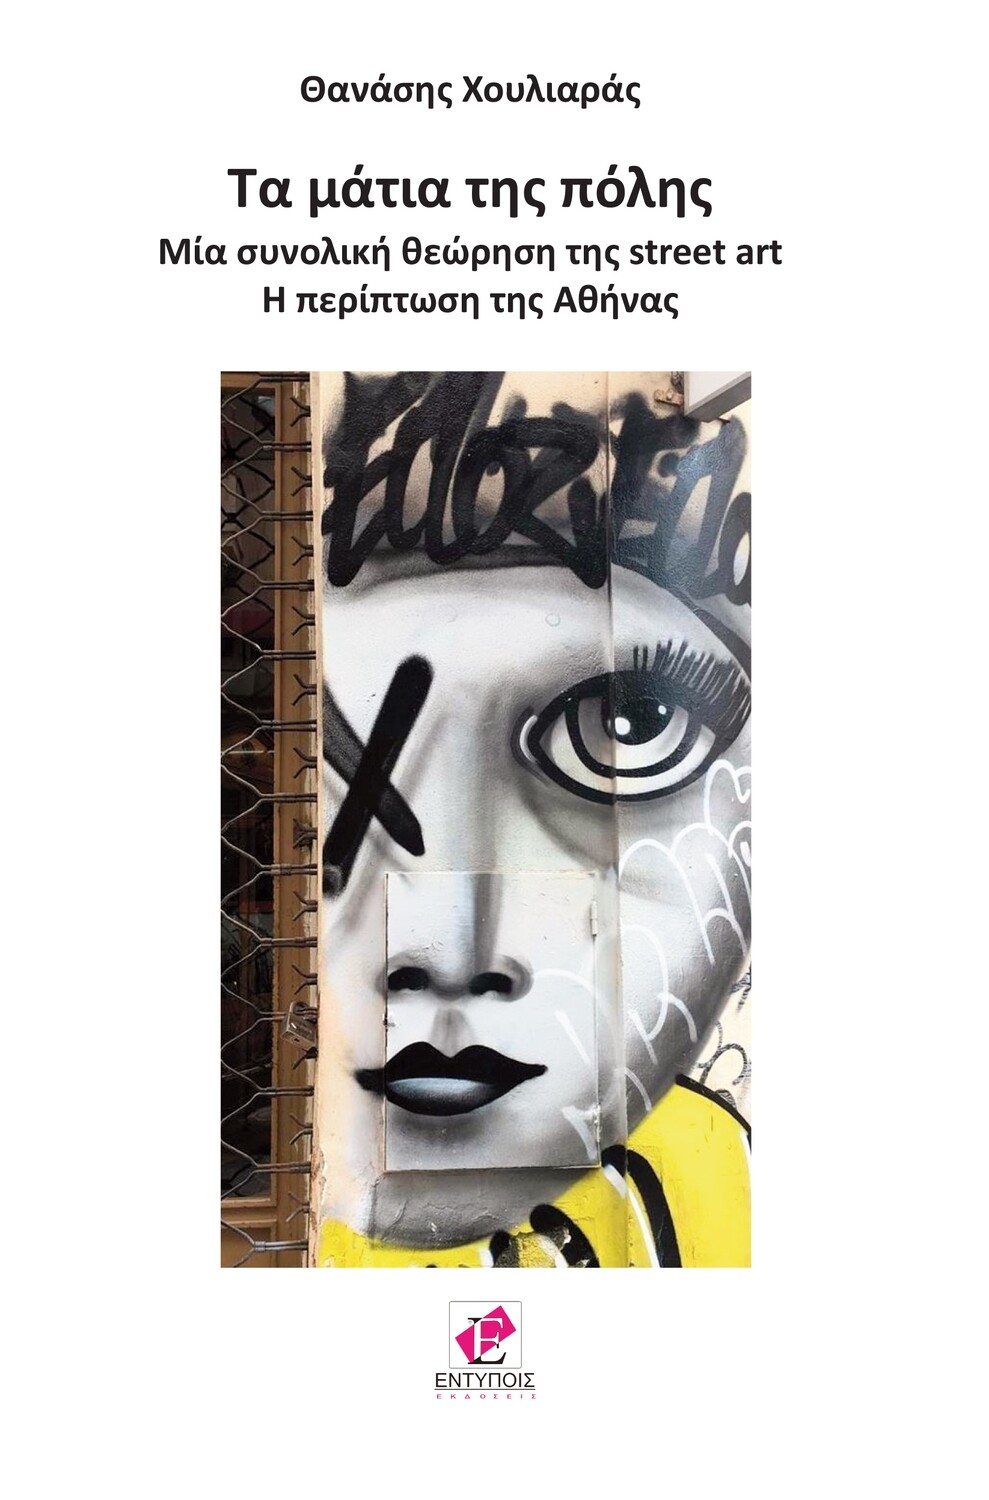 Τα μάτια της πόλης
Μία συνολική θεώρηση της street art
H περίπτωση της Αθήνας / ΘΑΝΑΣΗΣ ΧΟΥΛΙΑΡΑΣ